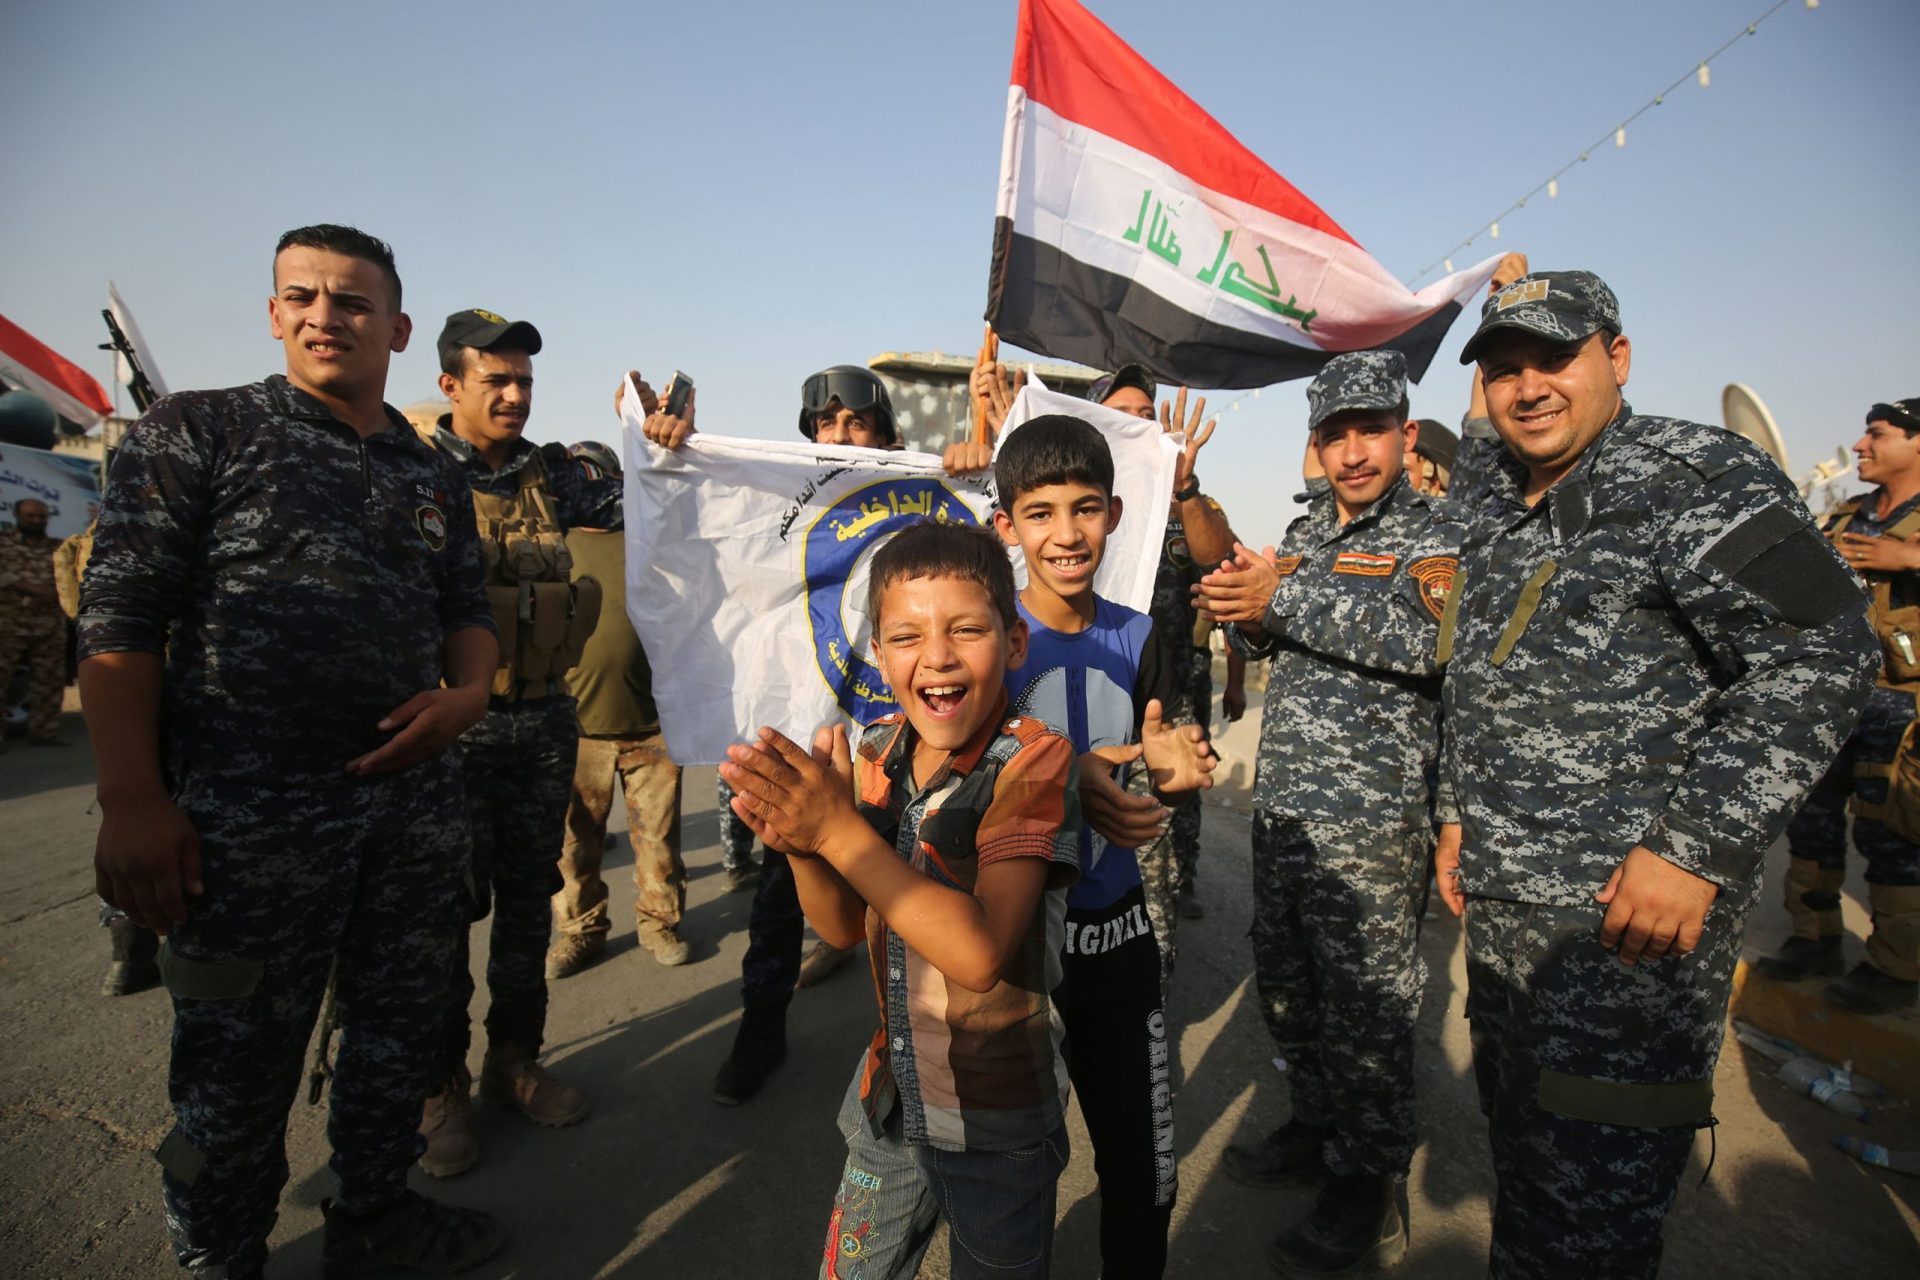 Iraque. Governo declara vitória em Mossul (outra vez)